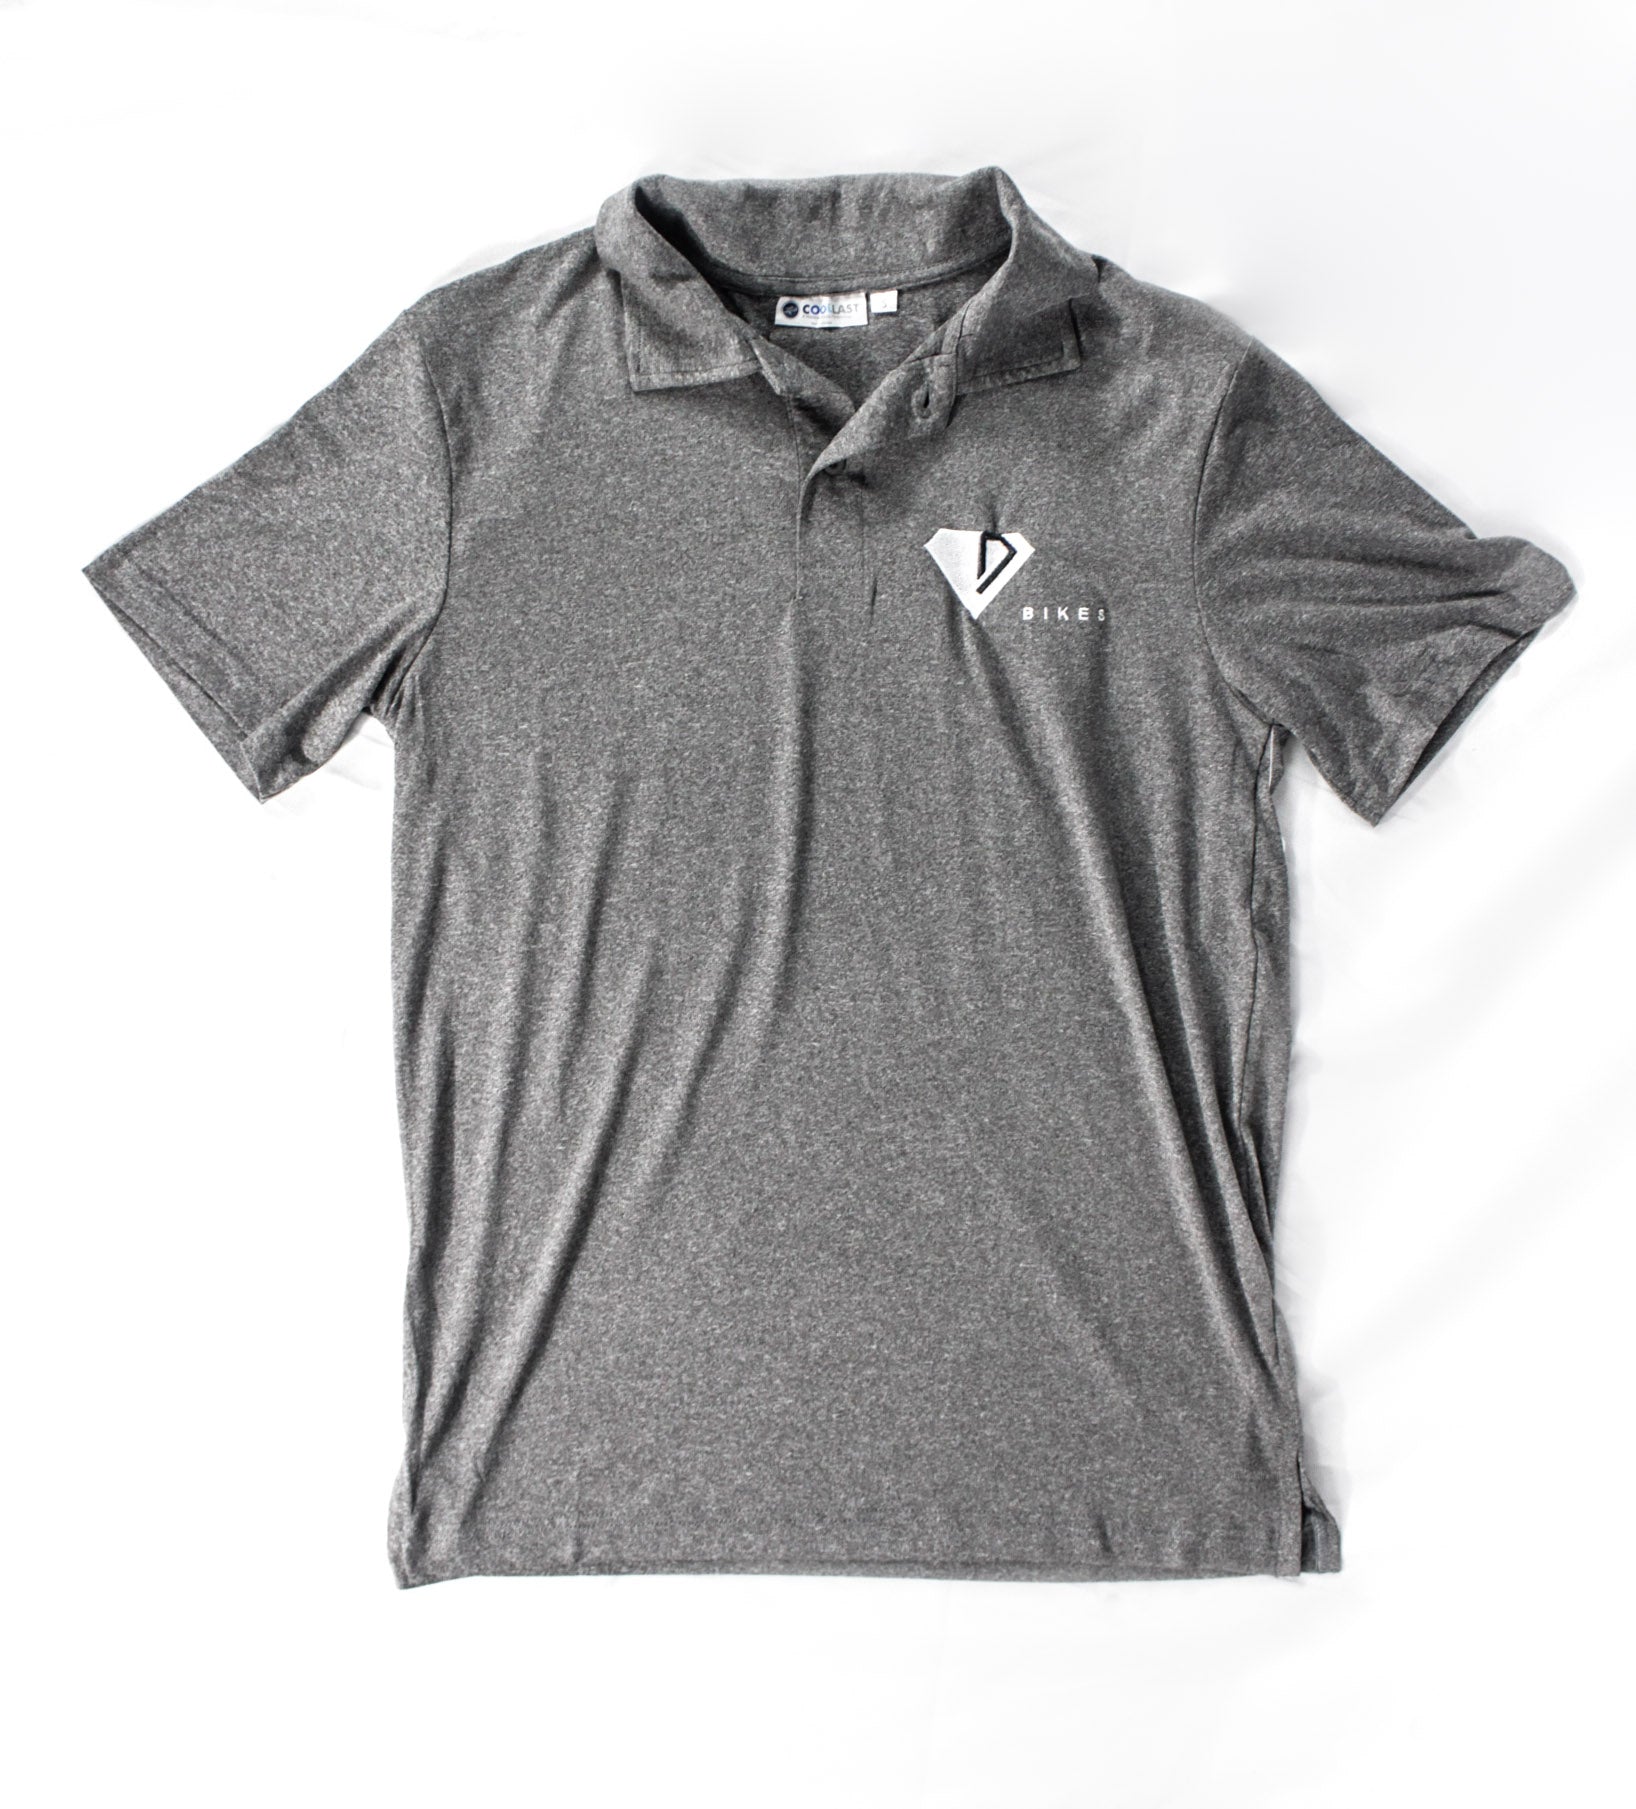 Dimond Golf Shirt